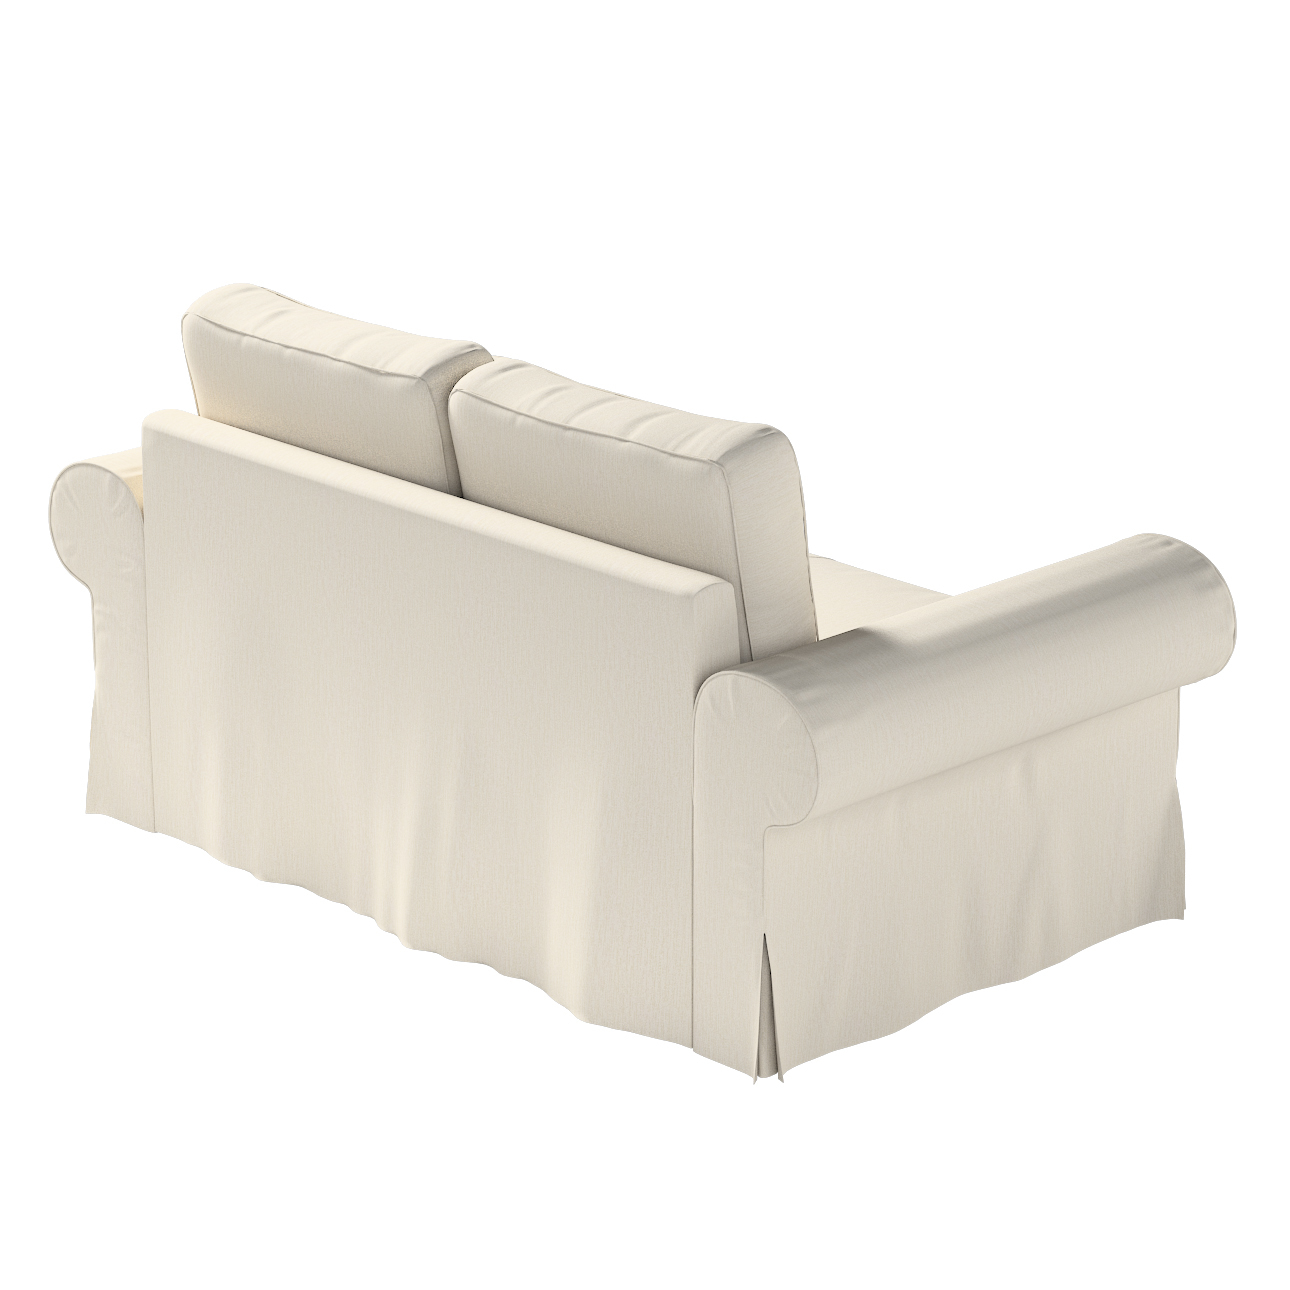 Bezug für Backabro 2-Sitzer Sofa ausklappbar, hellbeige, Bezug für Backabro günstig online kaufen